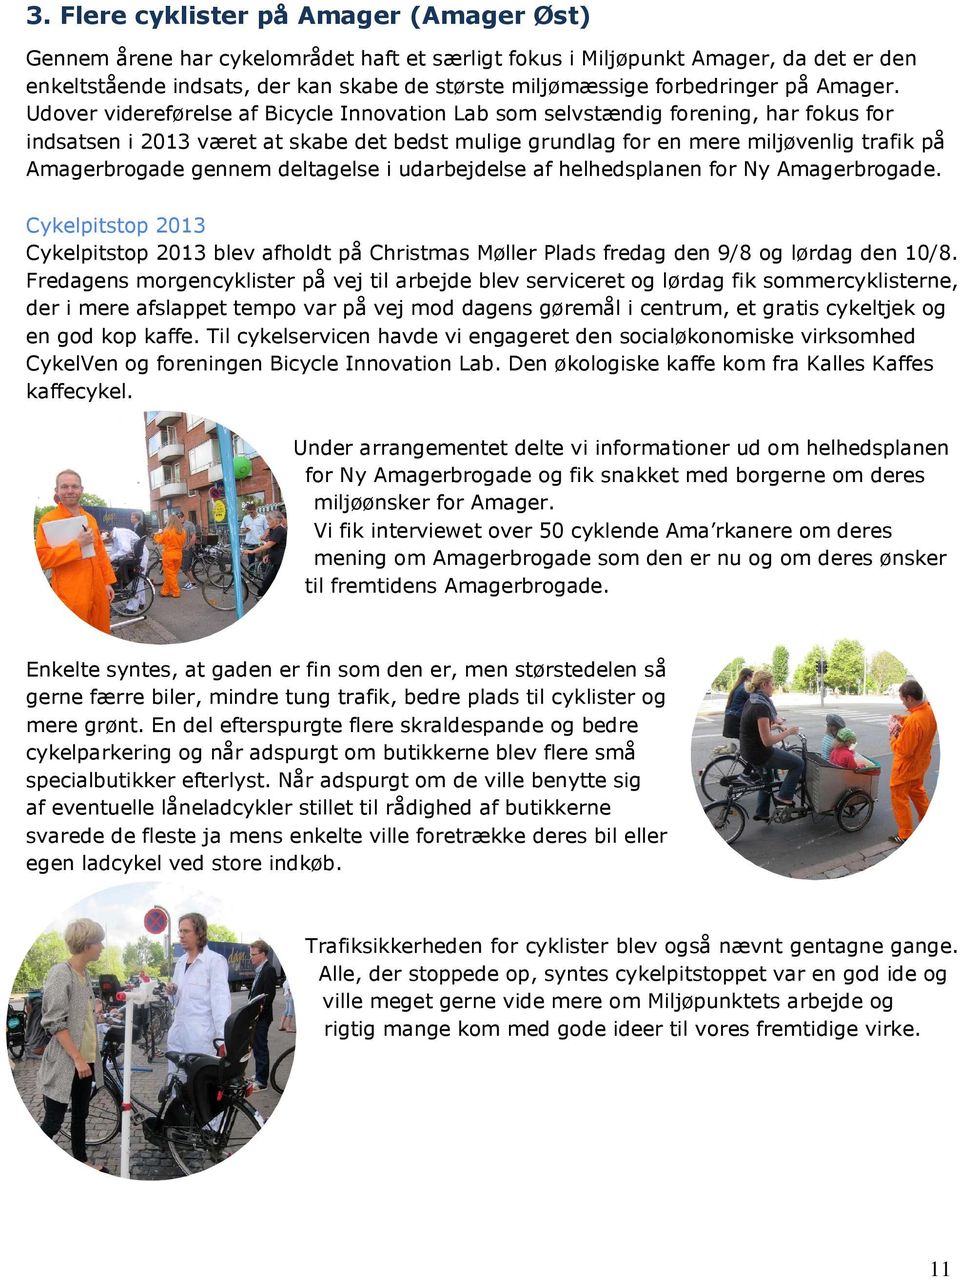 Udover videreførelse af Bicycle Innovation Lab som selvstændig forening, har fokus for indsatsen i 2013 været at skabe det bedst mulige grundlag for en mere miljøvenlig trafik på Amagerbrogade gennem